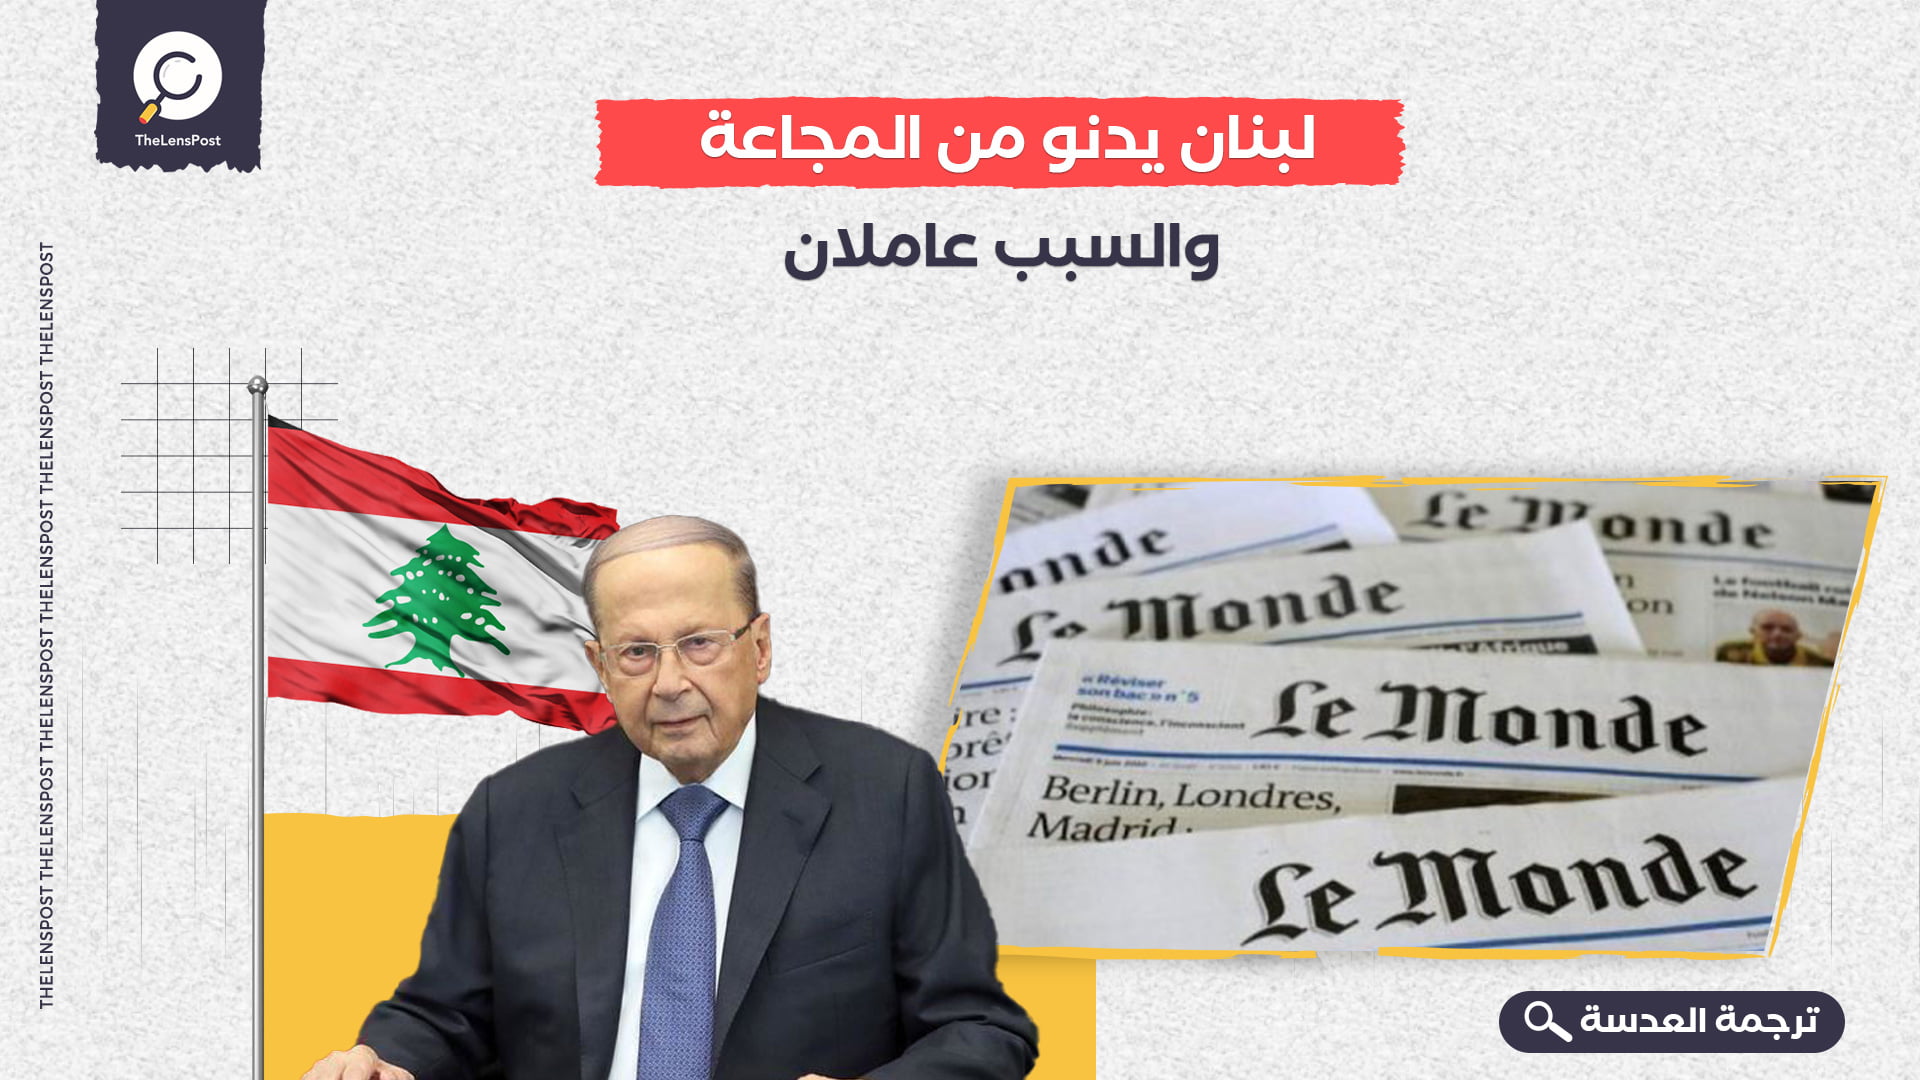 لوموند: لبنان يدنو من المجاعة.. والسبب عاملان